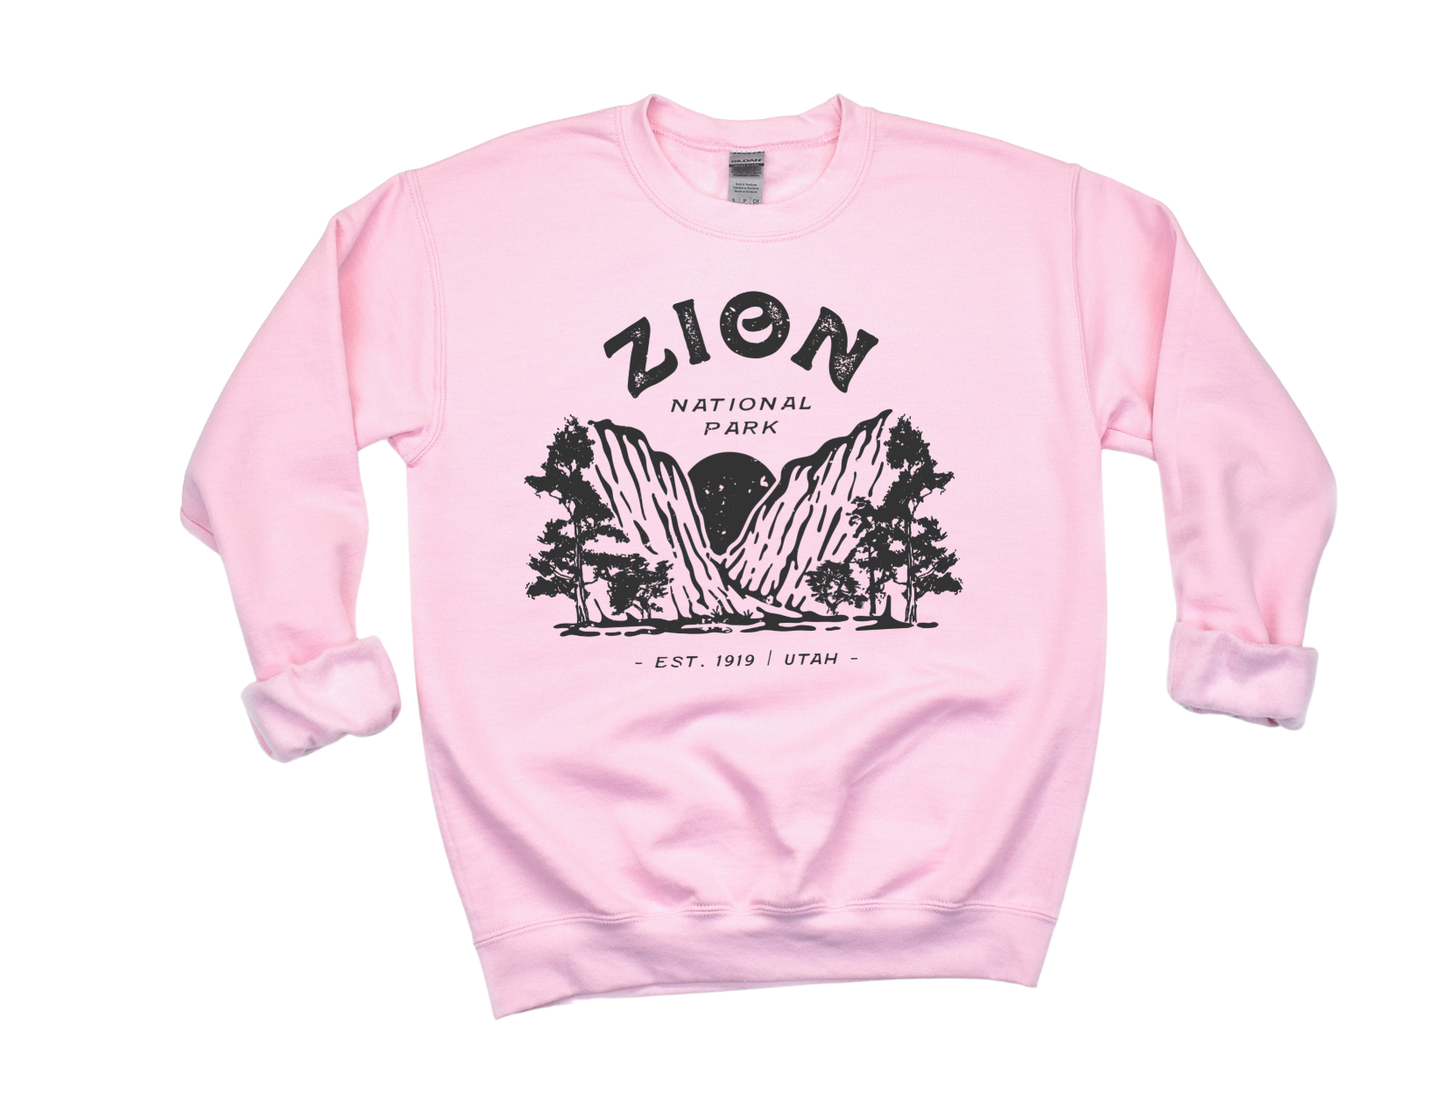 Zion National Park Unisex Sweatshirt